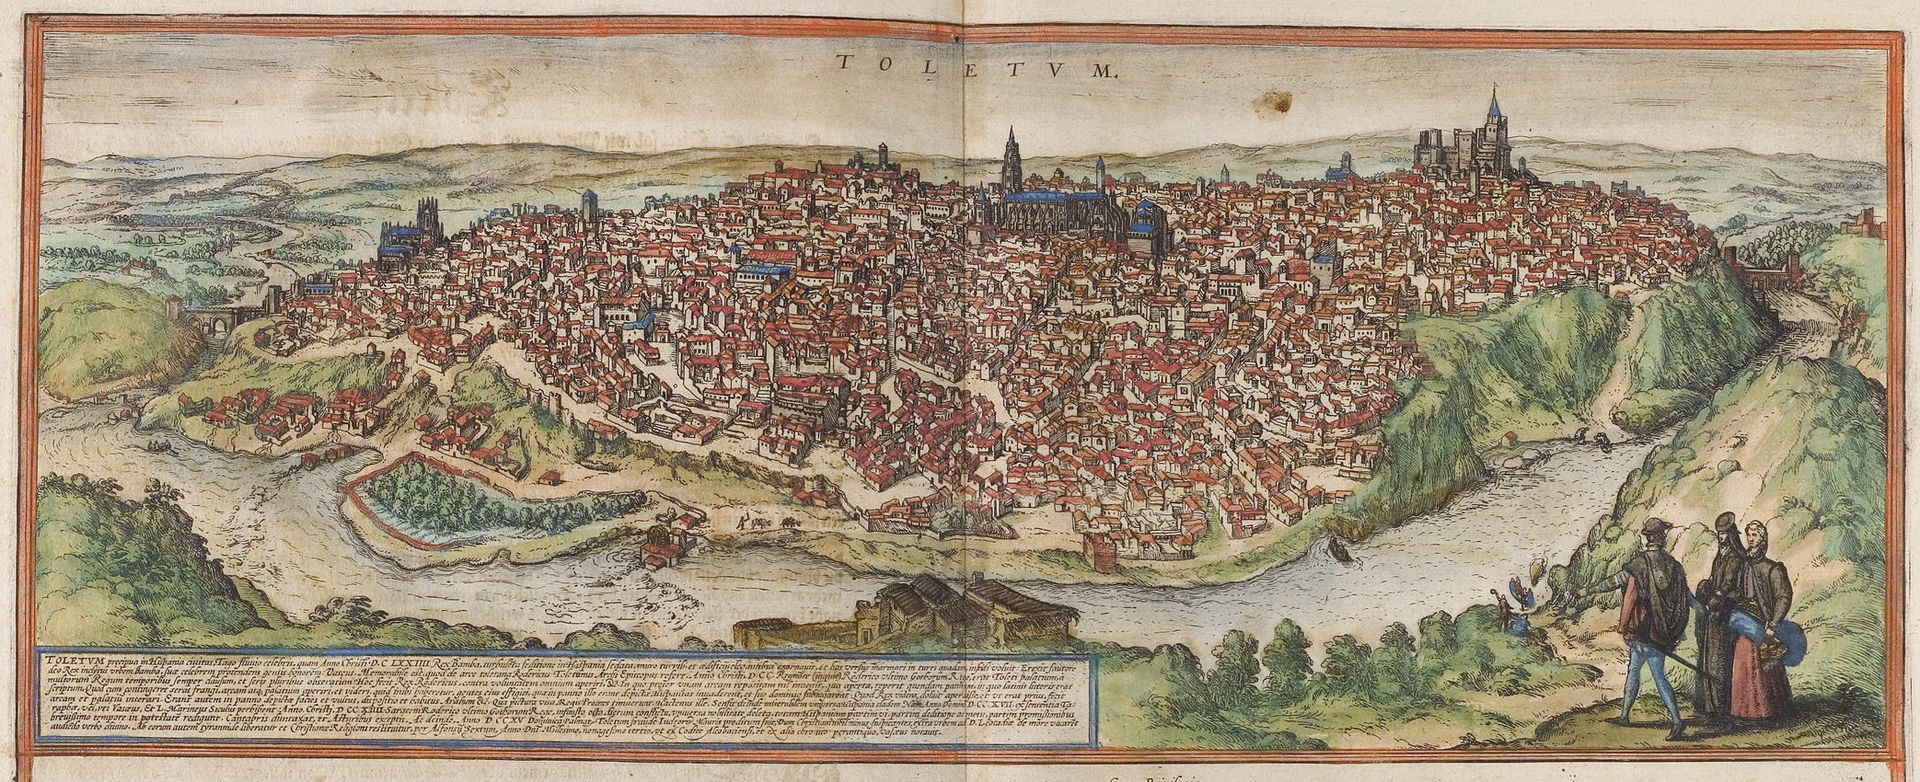 เมืองโทเลโด -ภาพเมืองเก่าสมัยคริตศวรรษที่ 16